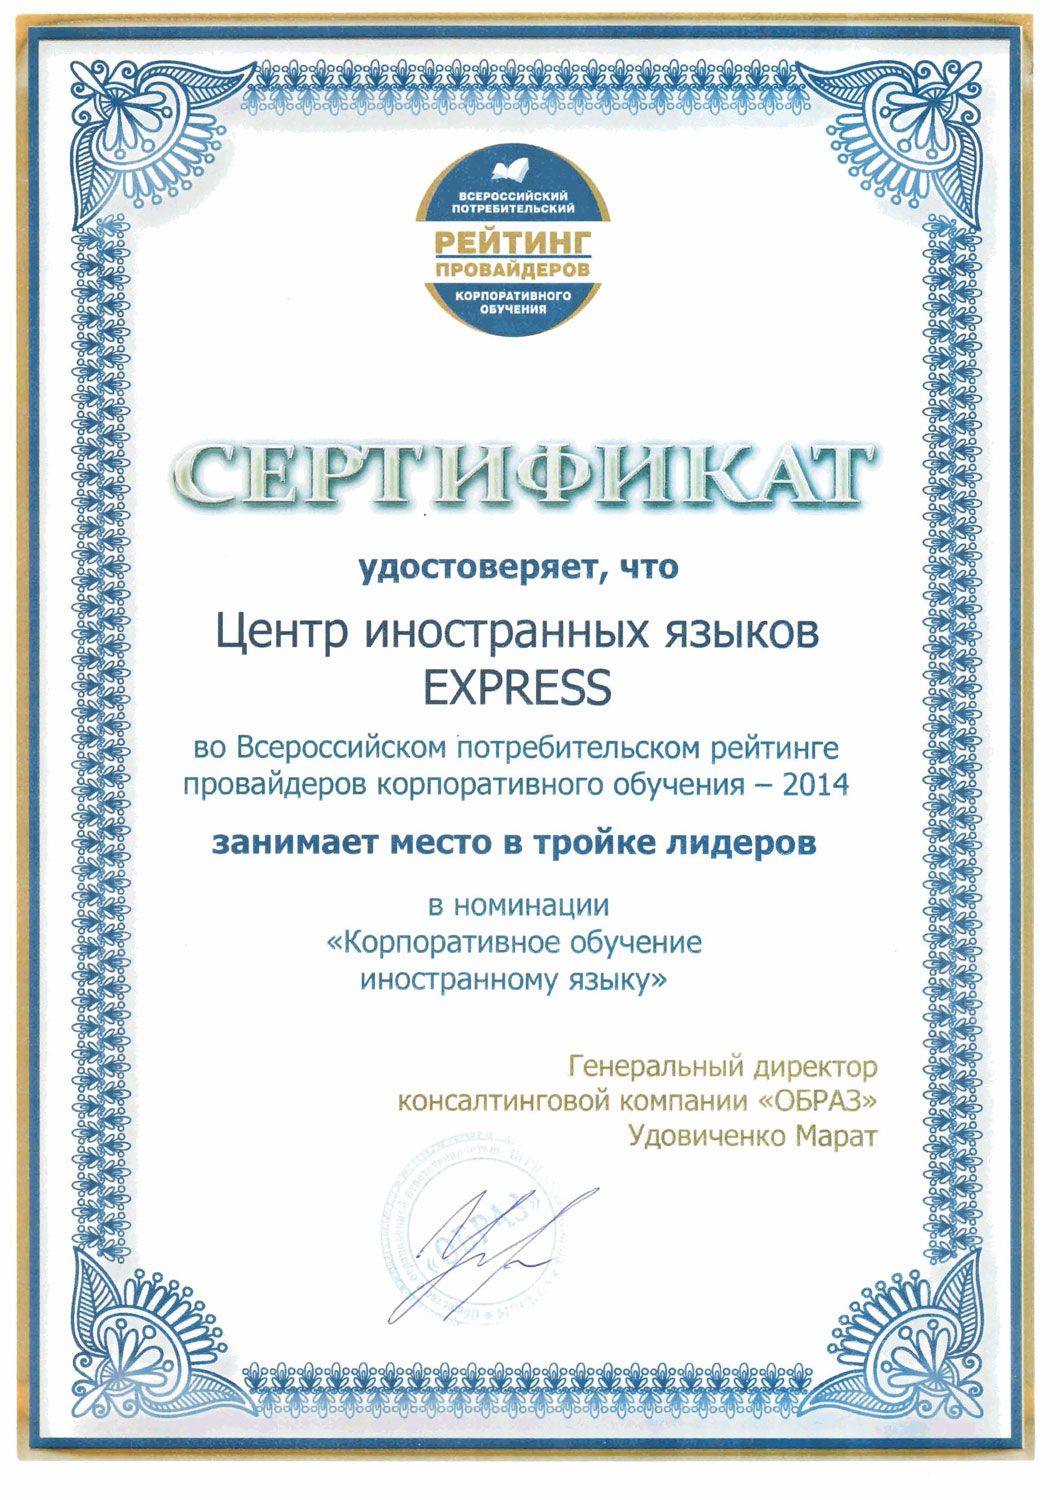 Всероссийский потребительский рейтинг провайдеров корпоративного обучения-2014